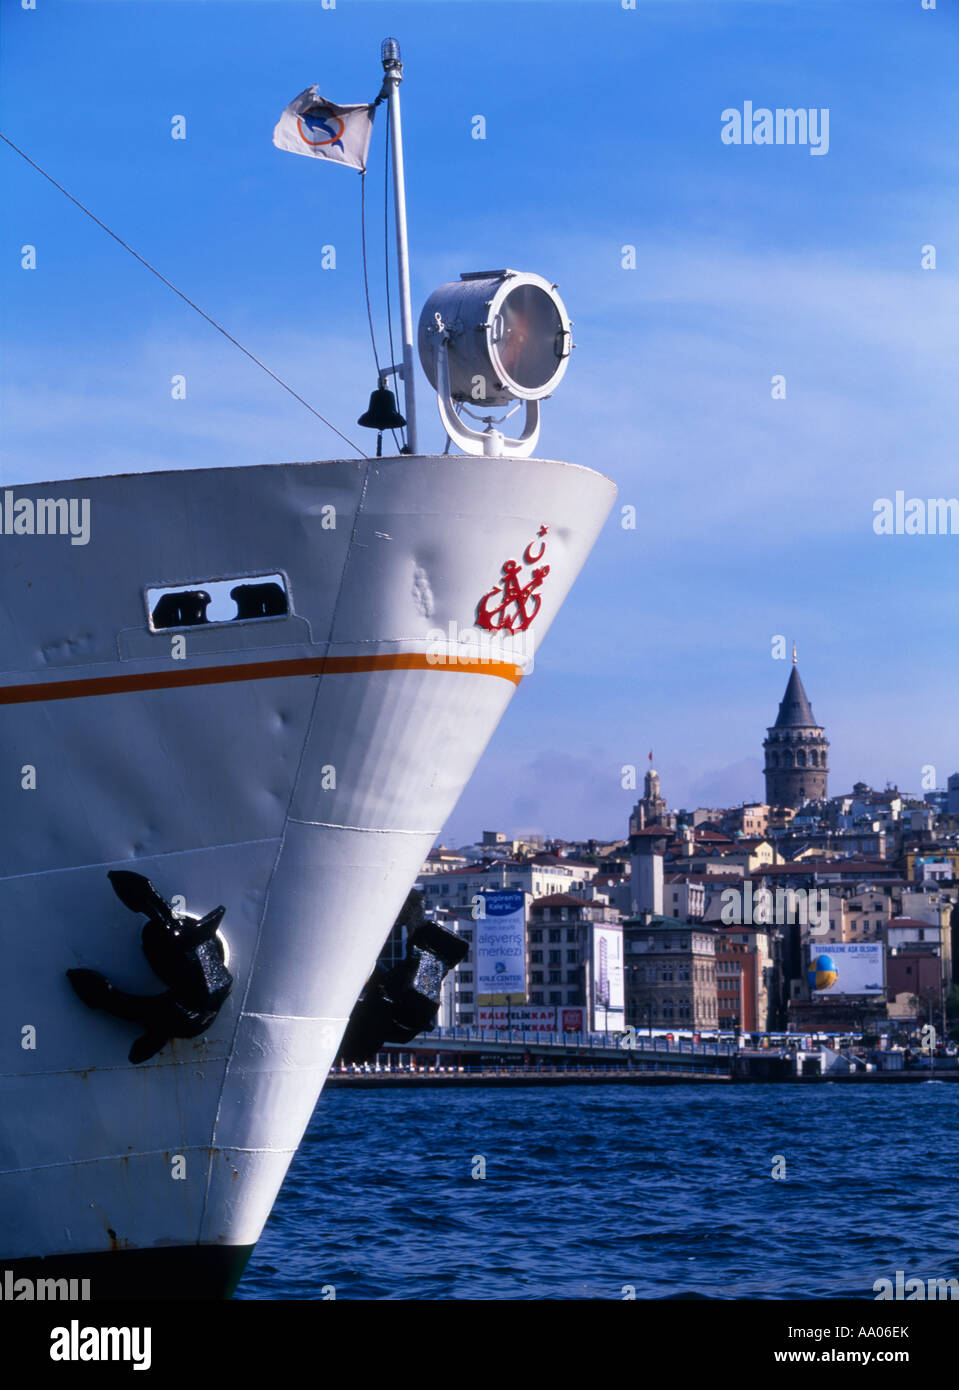 La Torre di Galata, Istanbul domina lo skyline al di là della prua di un traghetto sul Bosforo Foto Stock